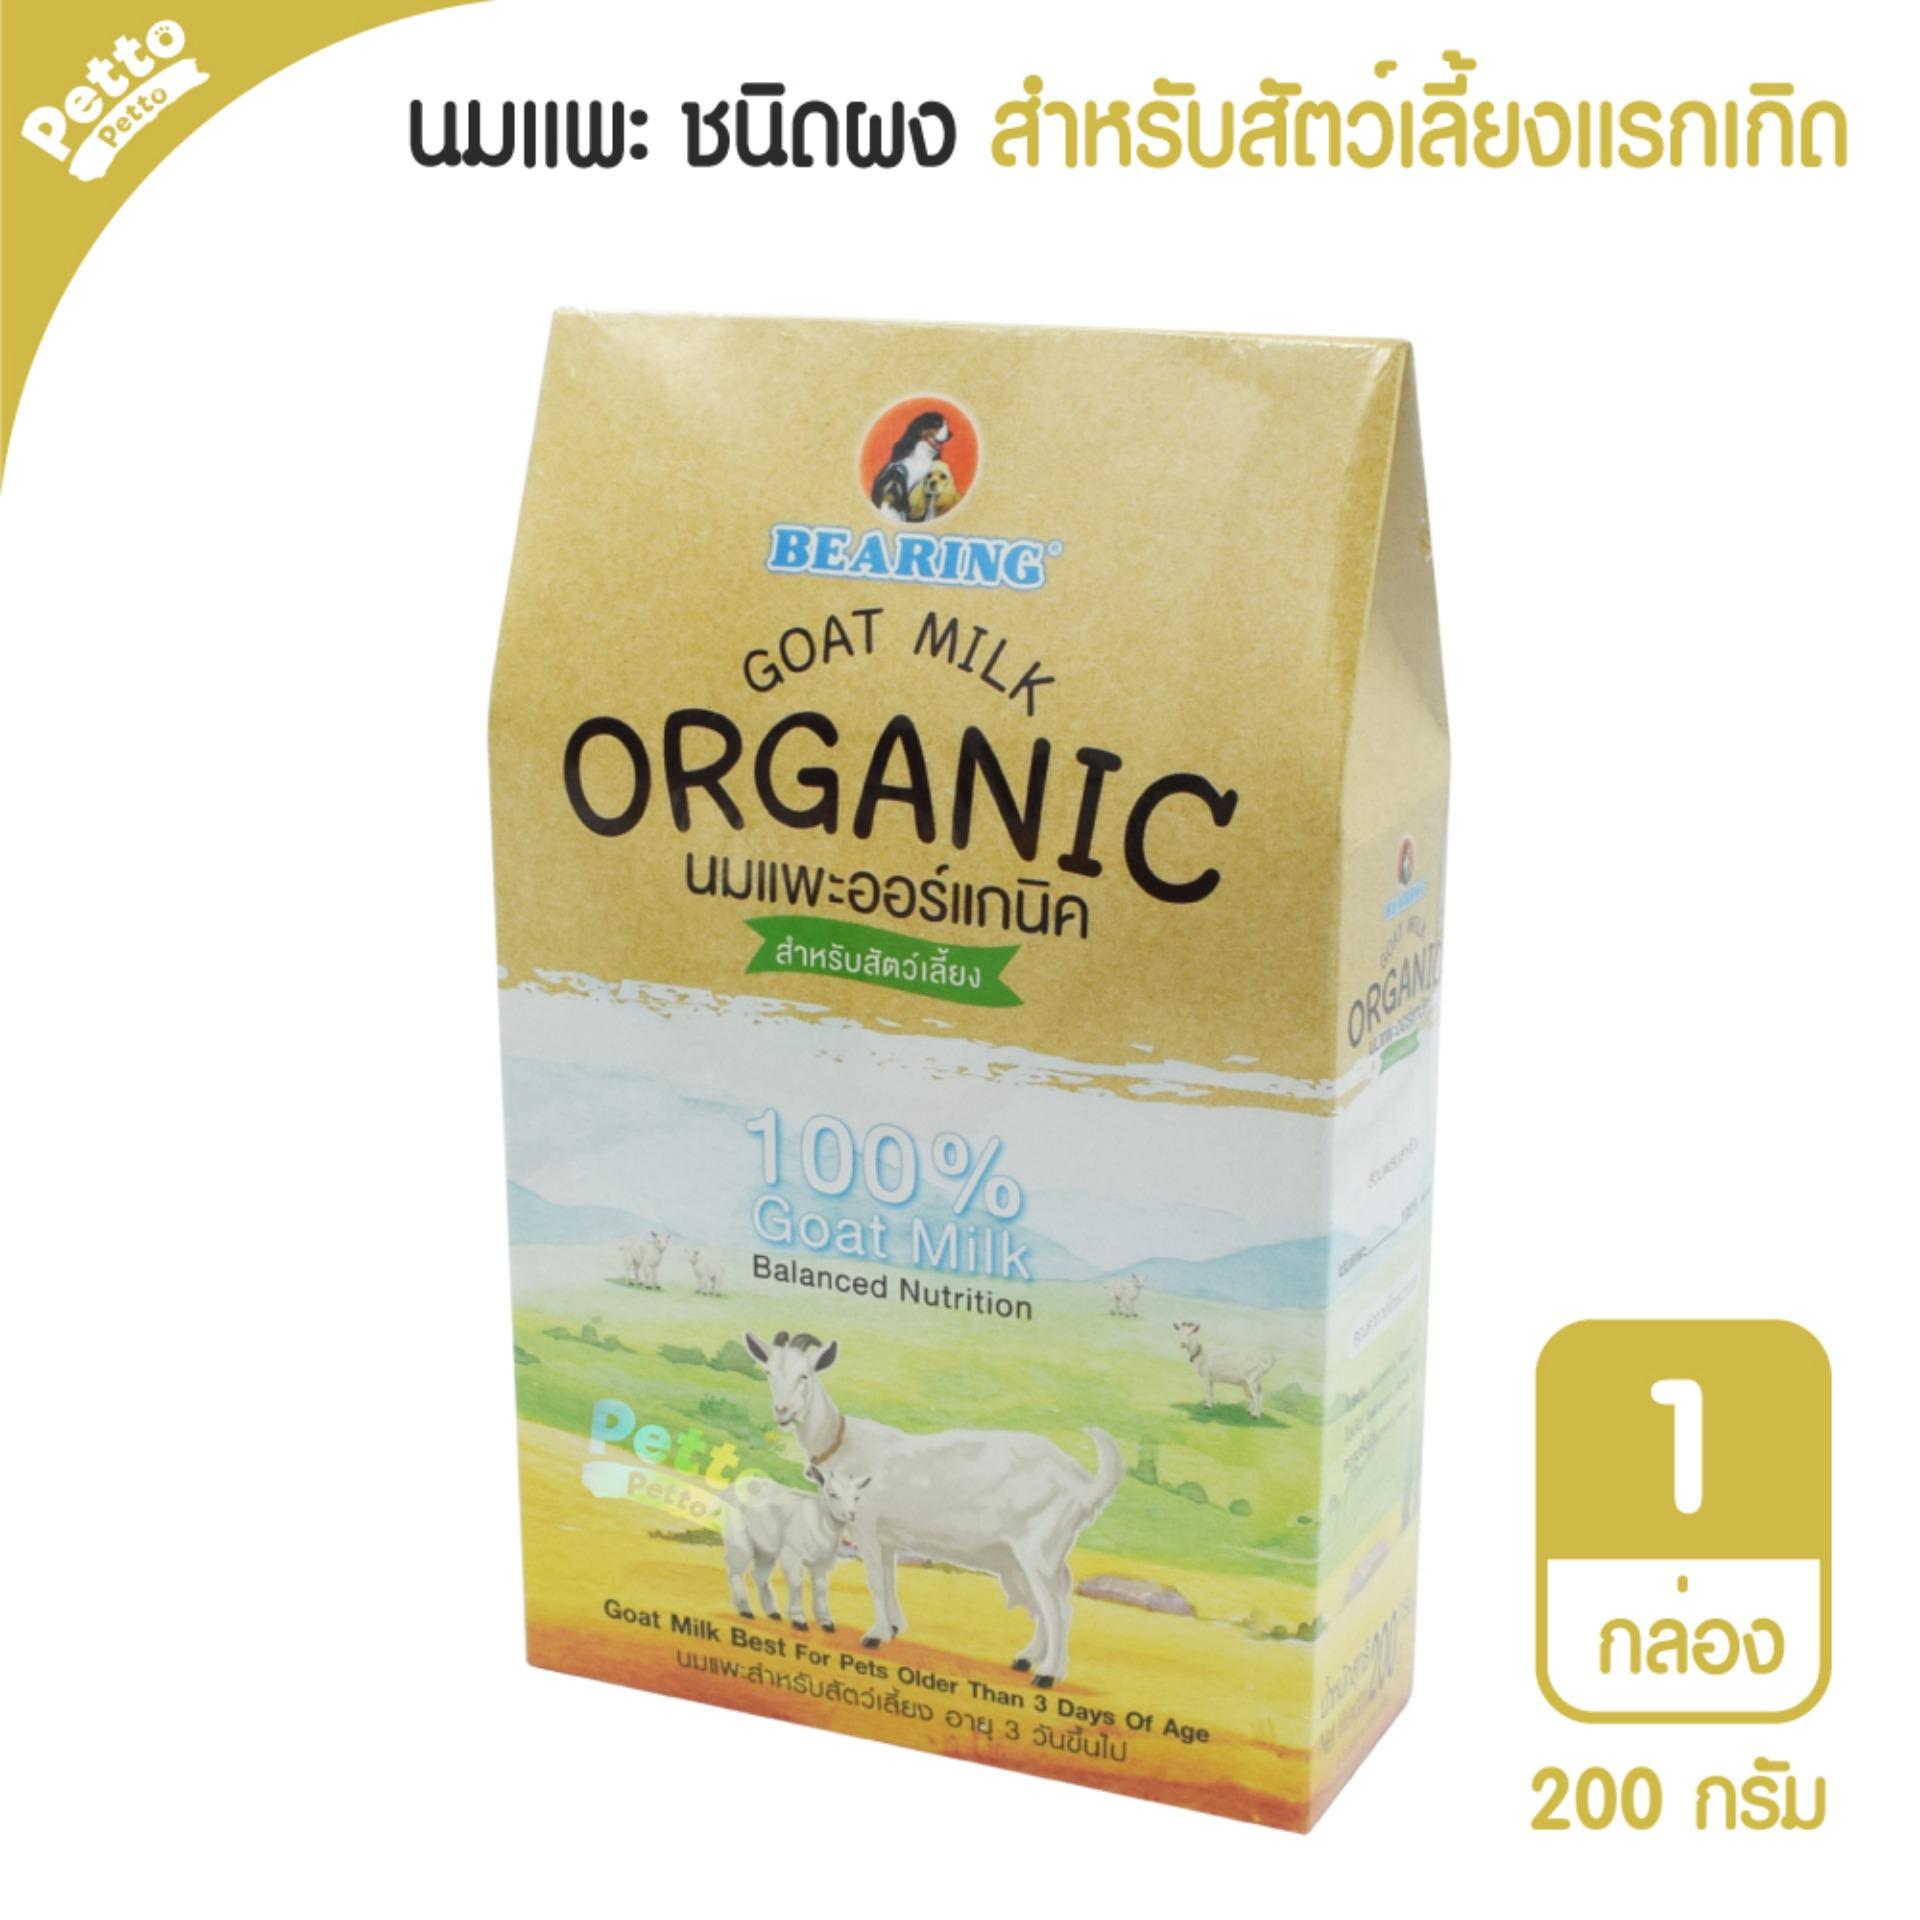 Bearing Goat Milk นมแพะผงออร์แกนิค อาหารทดแทนนมแม่ สำหรับสุนัขและแมว อายุ 3 วันขึ้นไป 200 กรัม